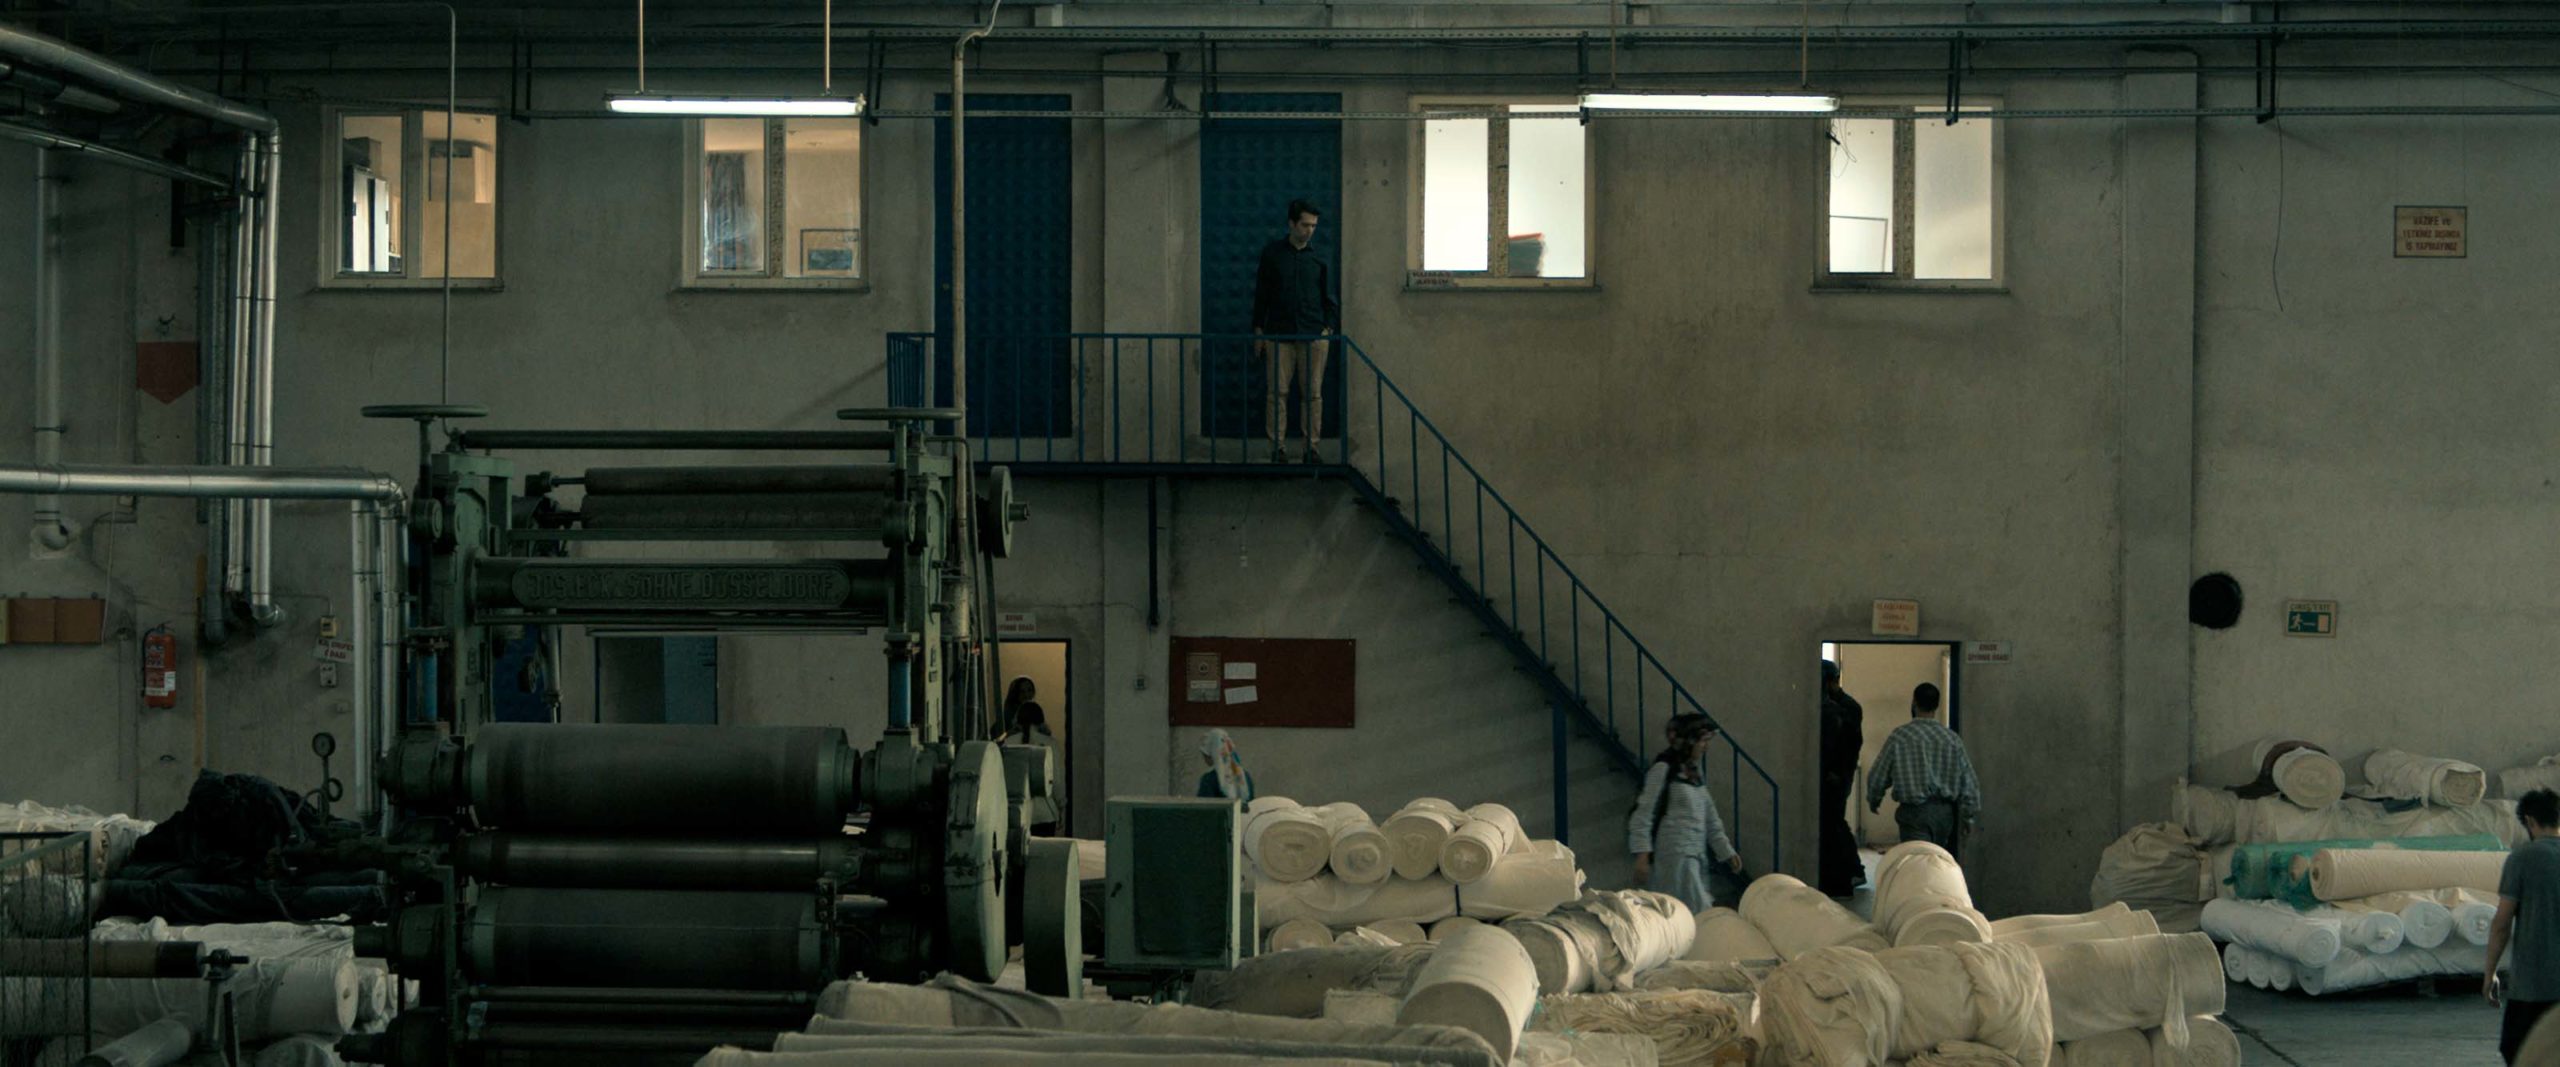 Selman Nacar İki Şafak Arasında 39. Torino Film Festivali En İyi Film Ödülü